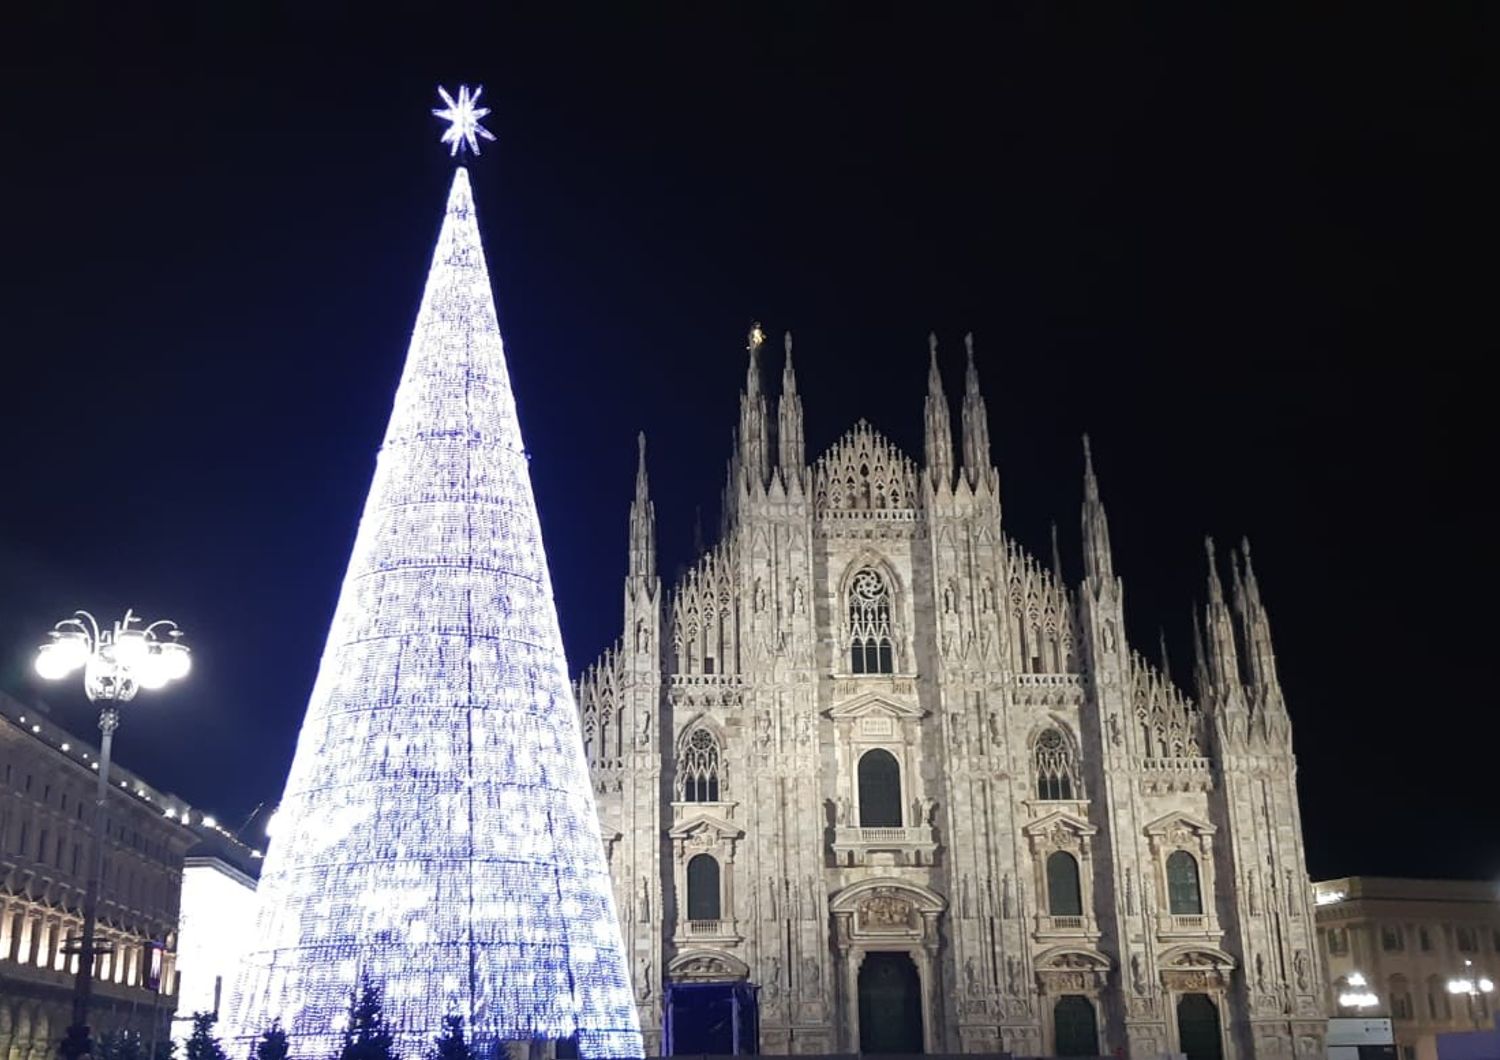 Il Duomo di Milano in periodo natalizio